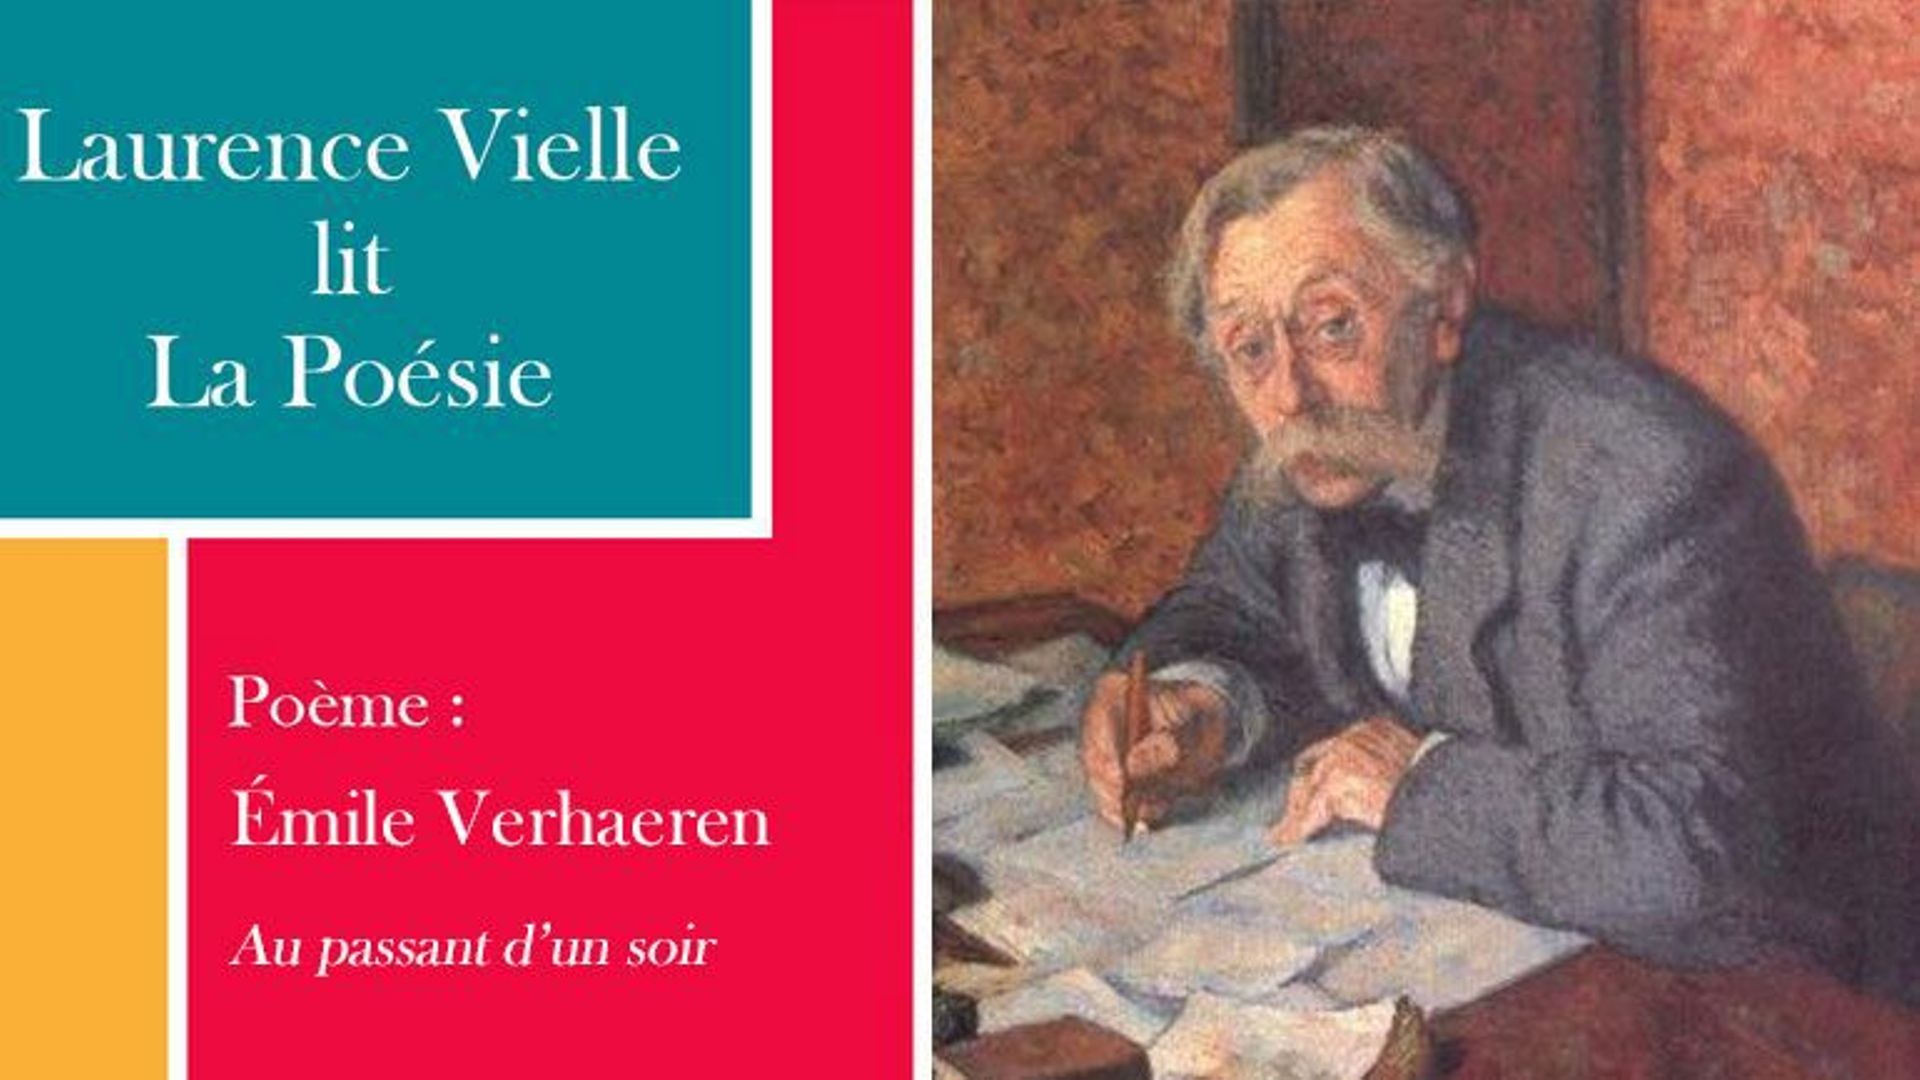 Laurence Vielle lit "Au passant d’un soir" d’Emile Verhaeren